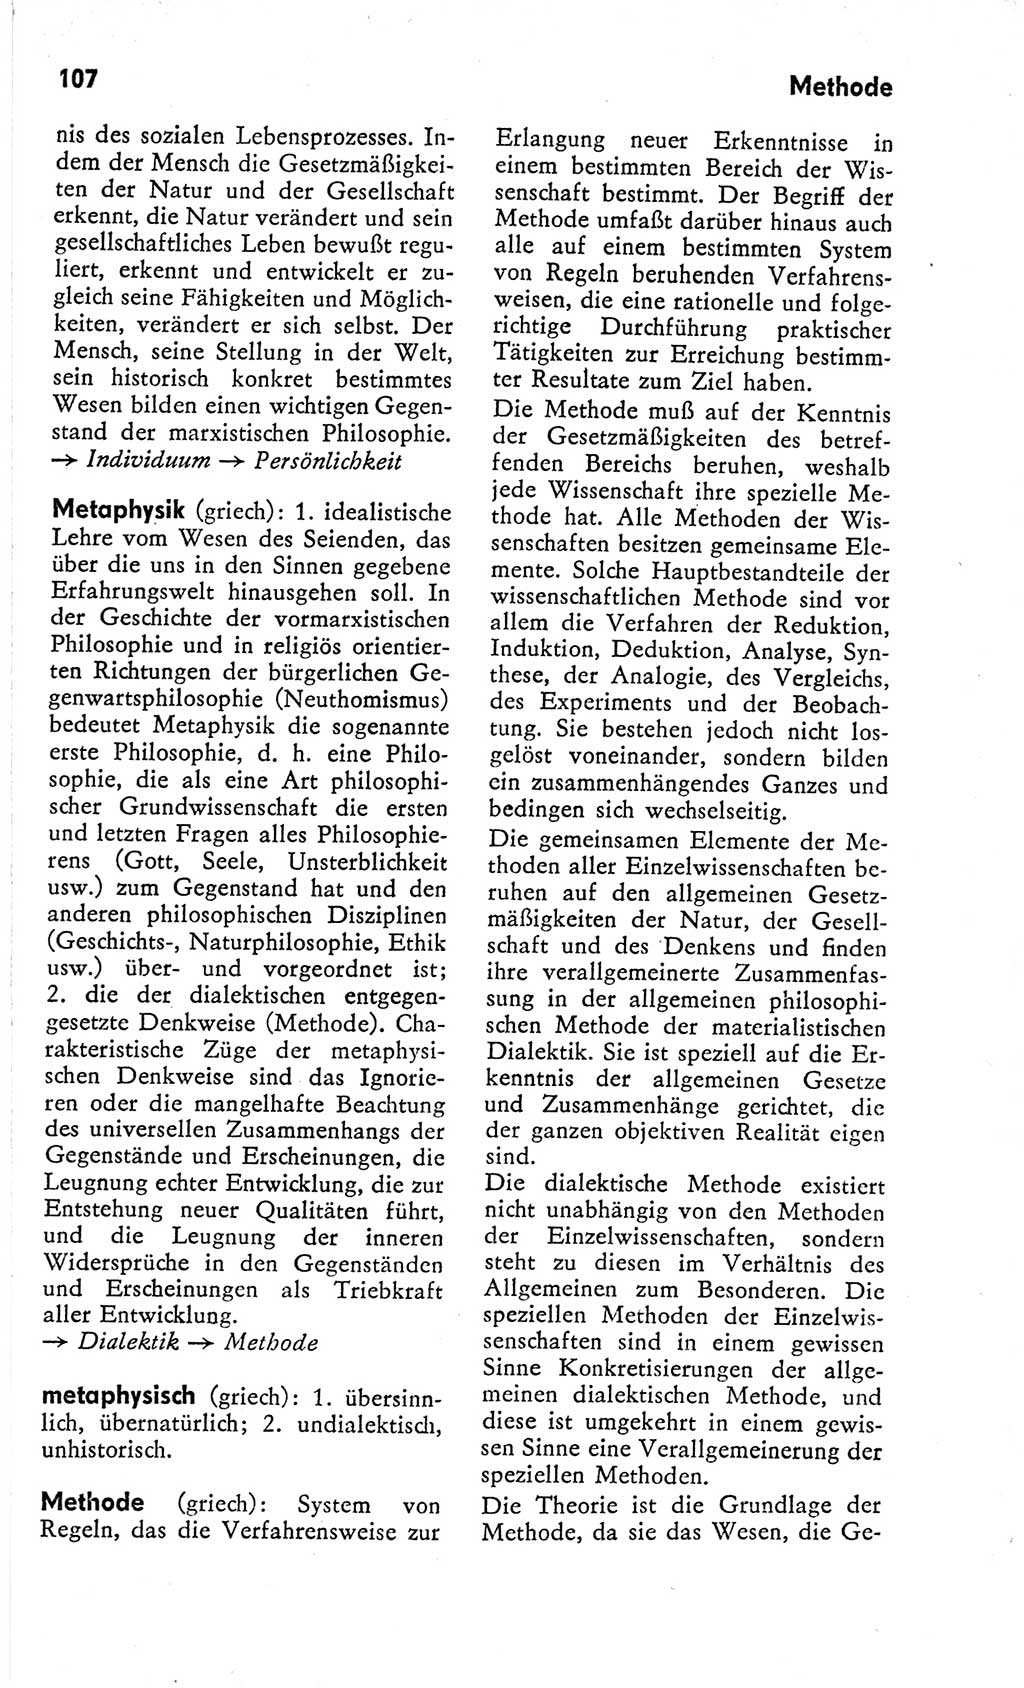 Kleines Wörterbuch der marxistisch-leninistischen Philosophie [Deutsche Demokratische Republik (DDR)] 1966, Seite 107 (Kl. Wb. ML Phil. DDR 1966, S. 107)